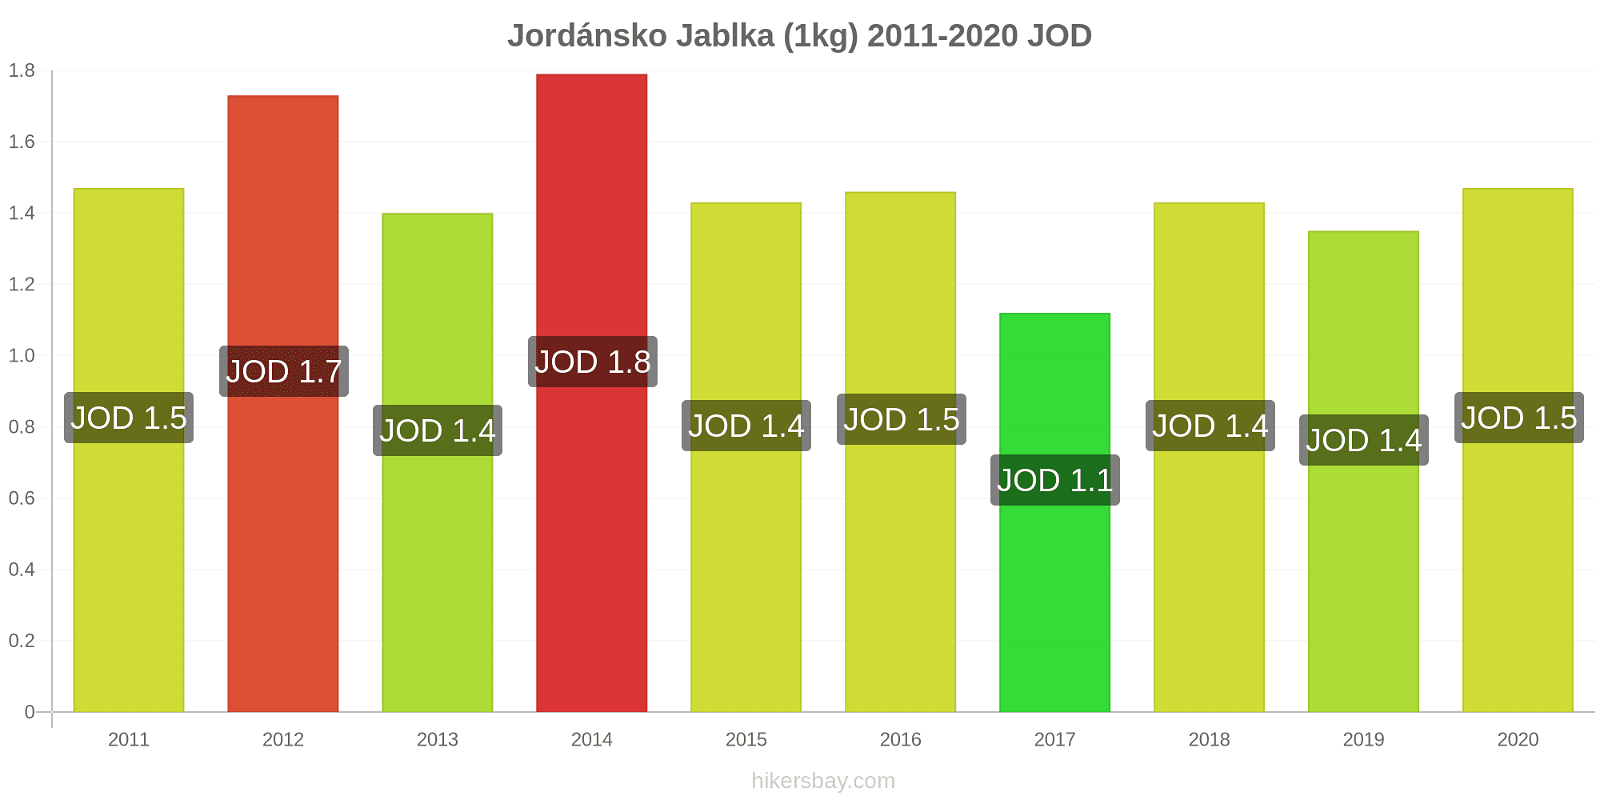 Jordánsko změny cen Jablka (1kg) hikersbay.com